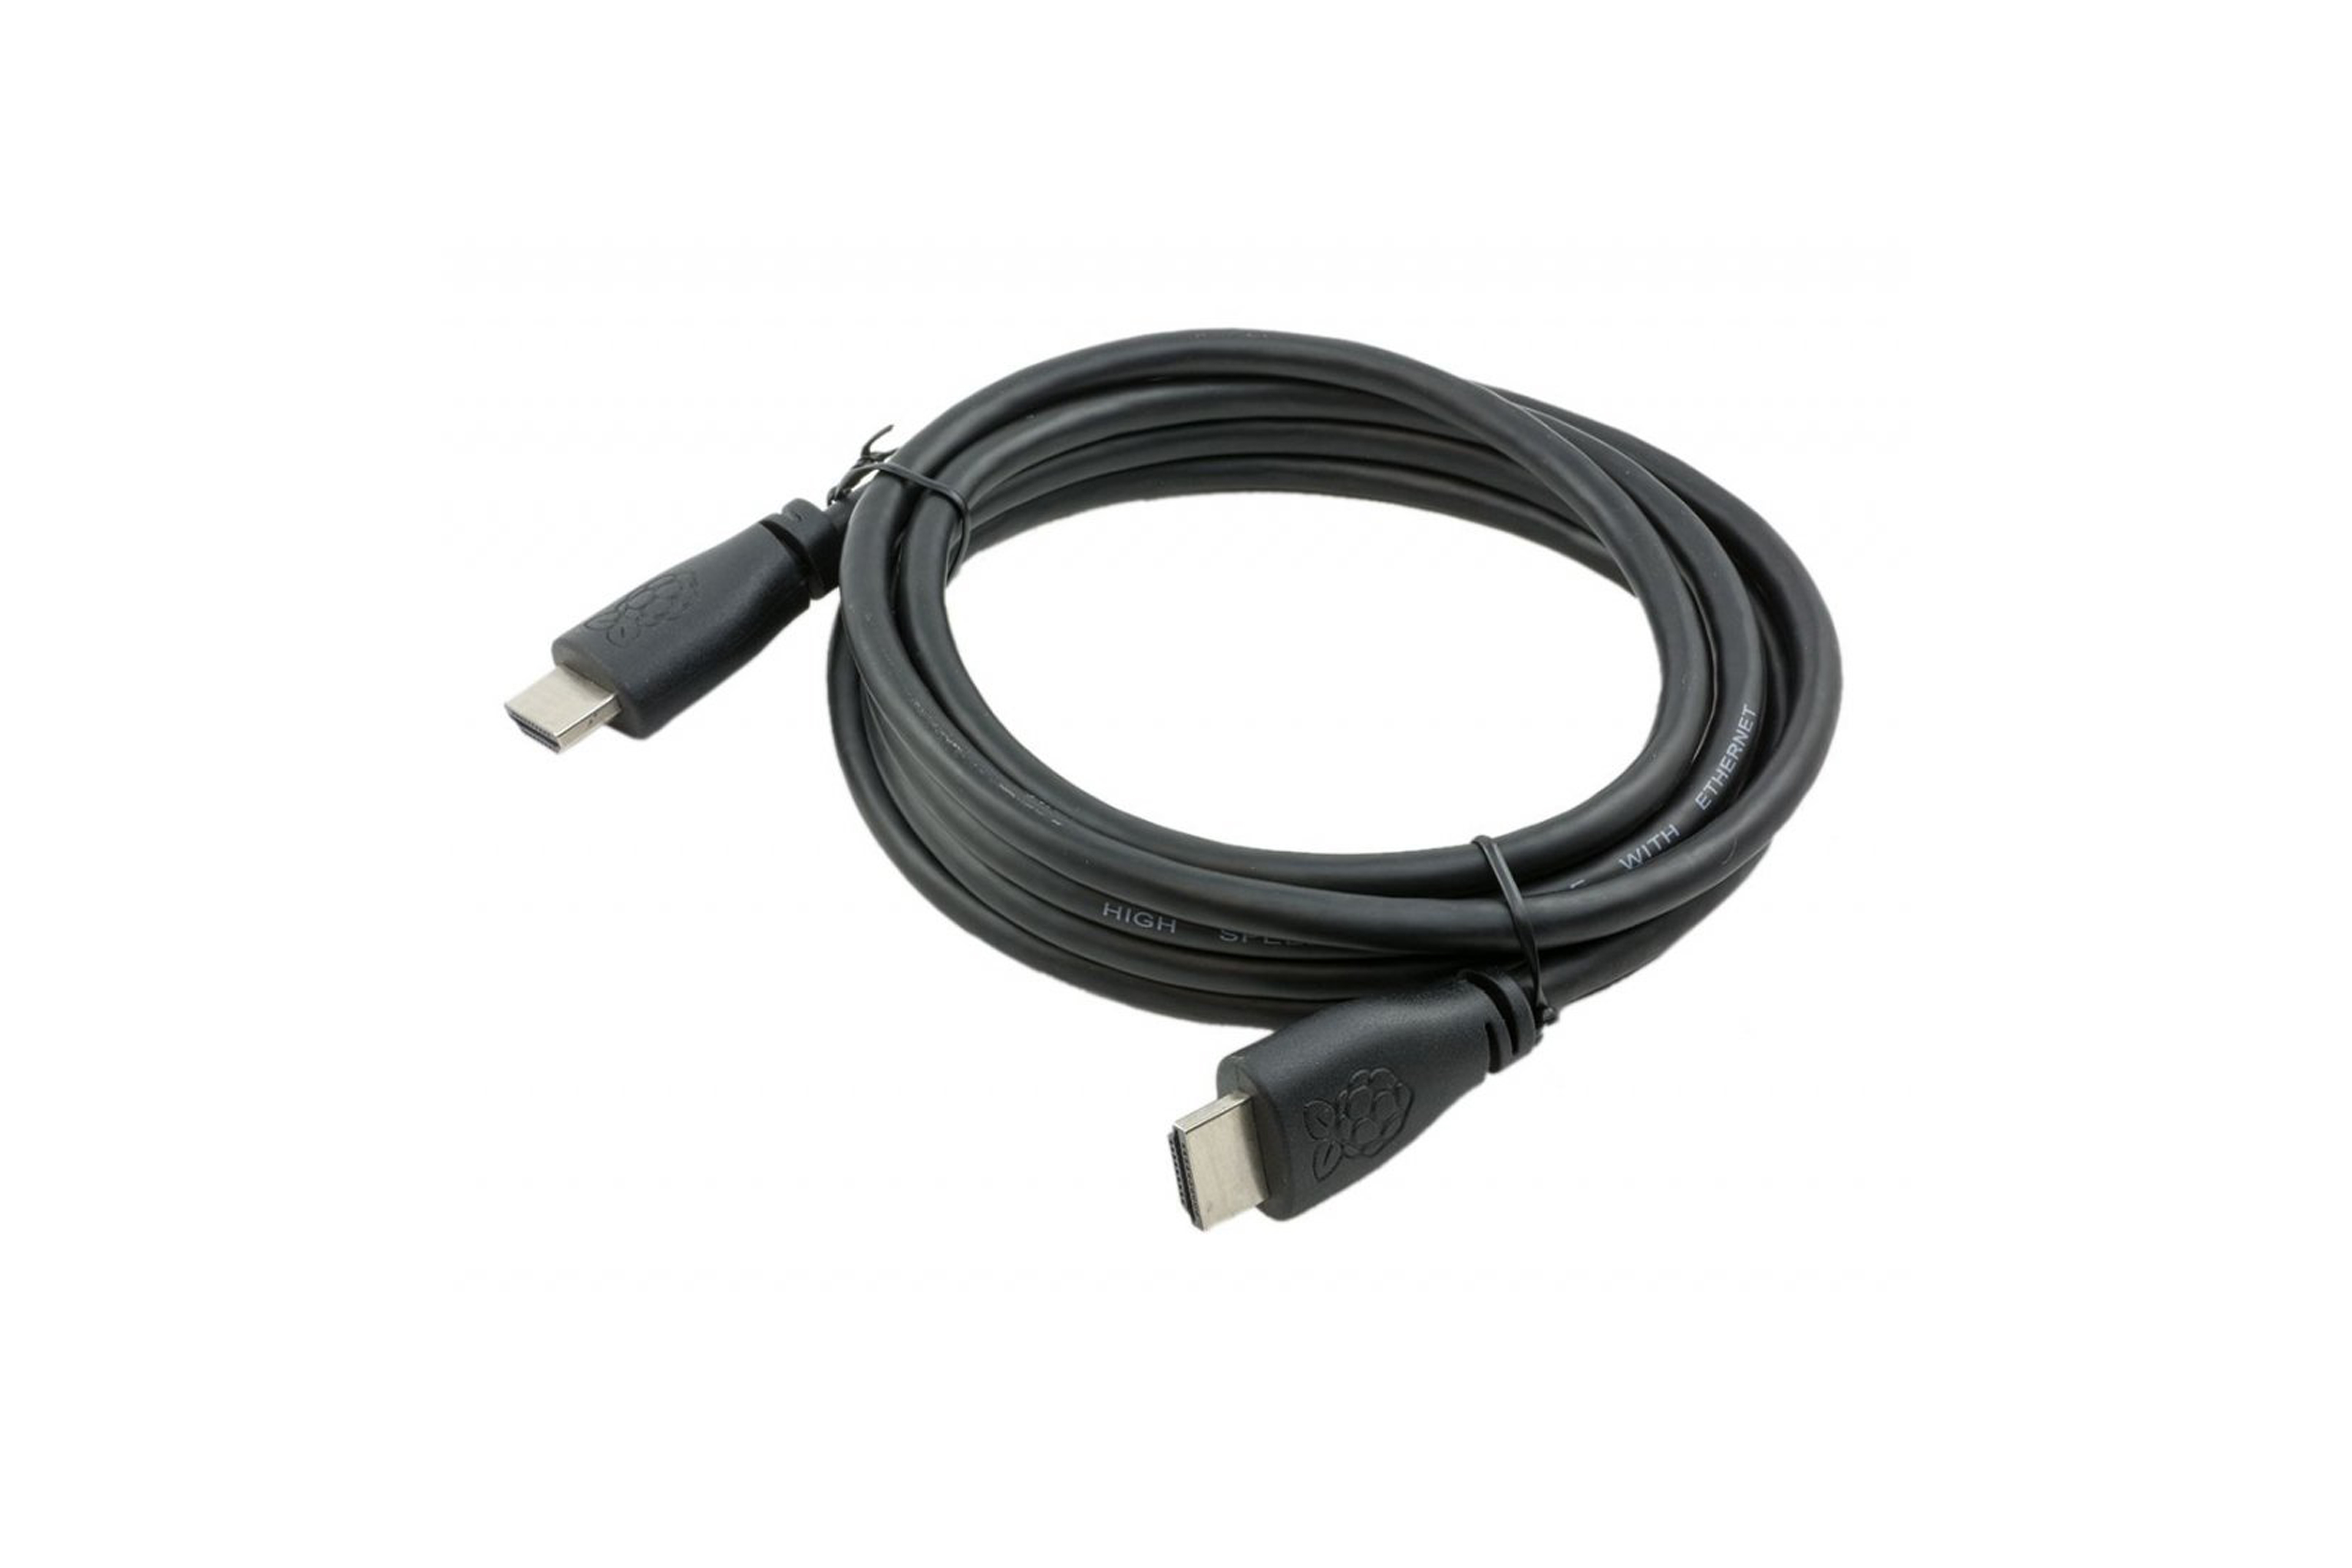  Câble officiel HDMI de 1m noir pour Raspberry Pi